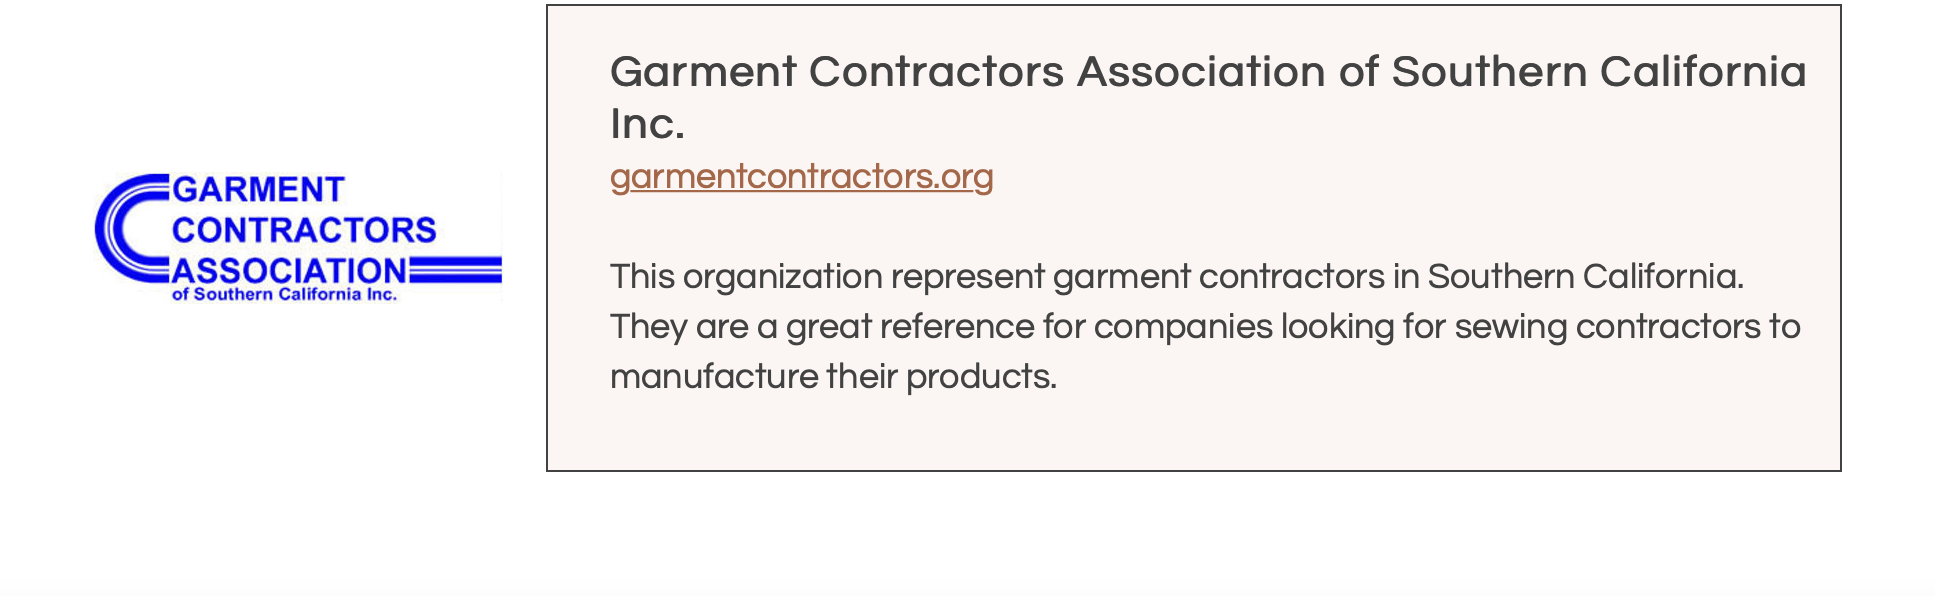 Garment Contractors Association